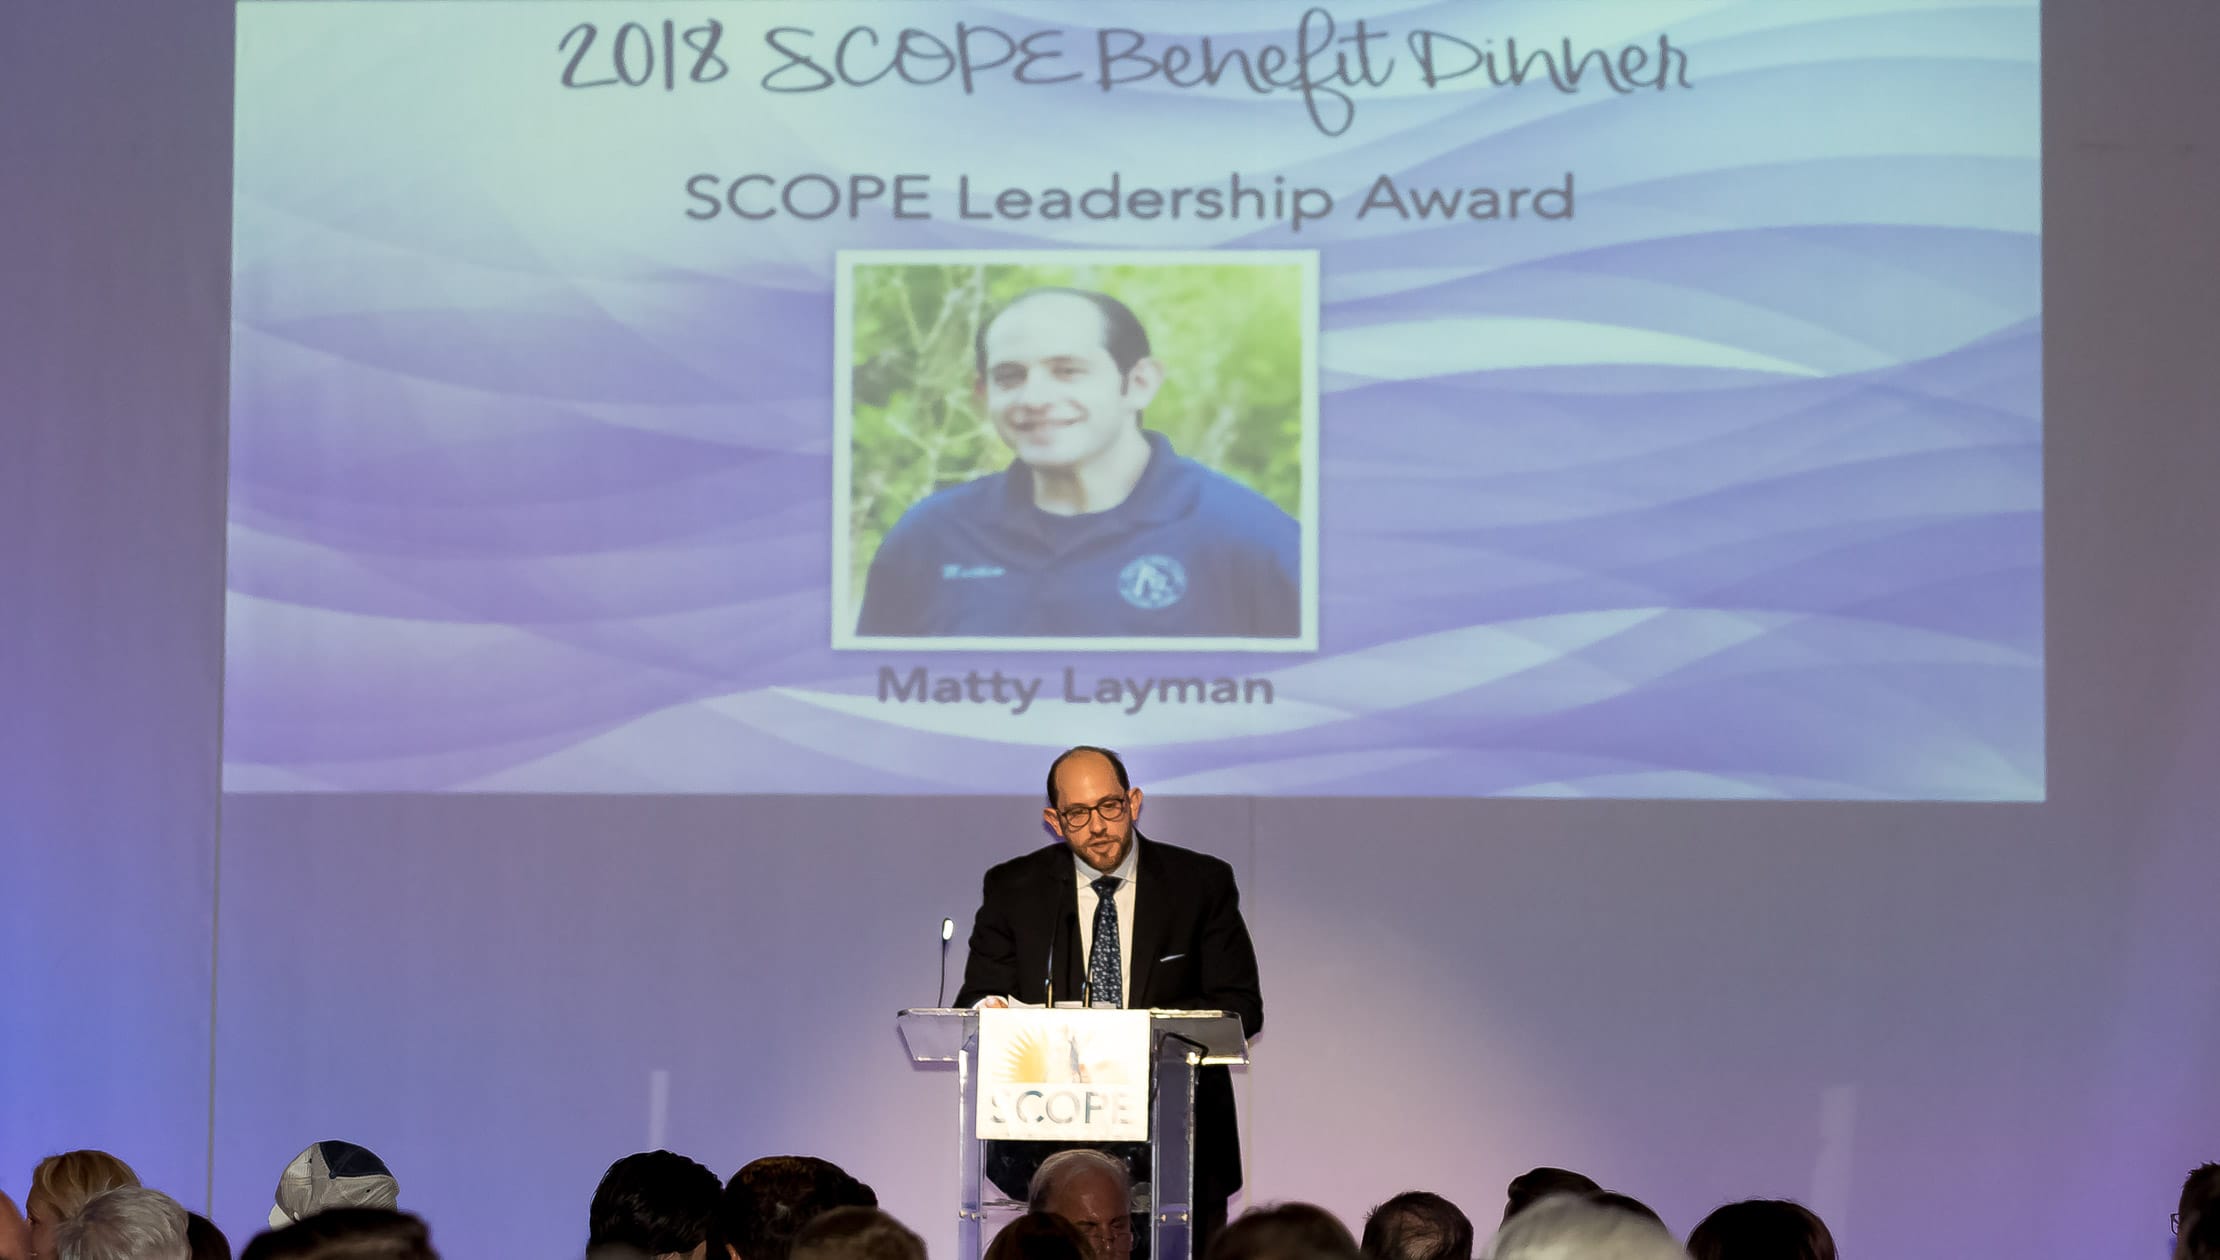 Matty speaking at SCOPE Benefit Dinner